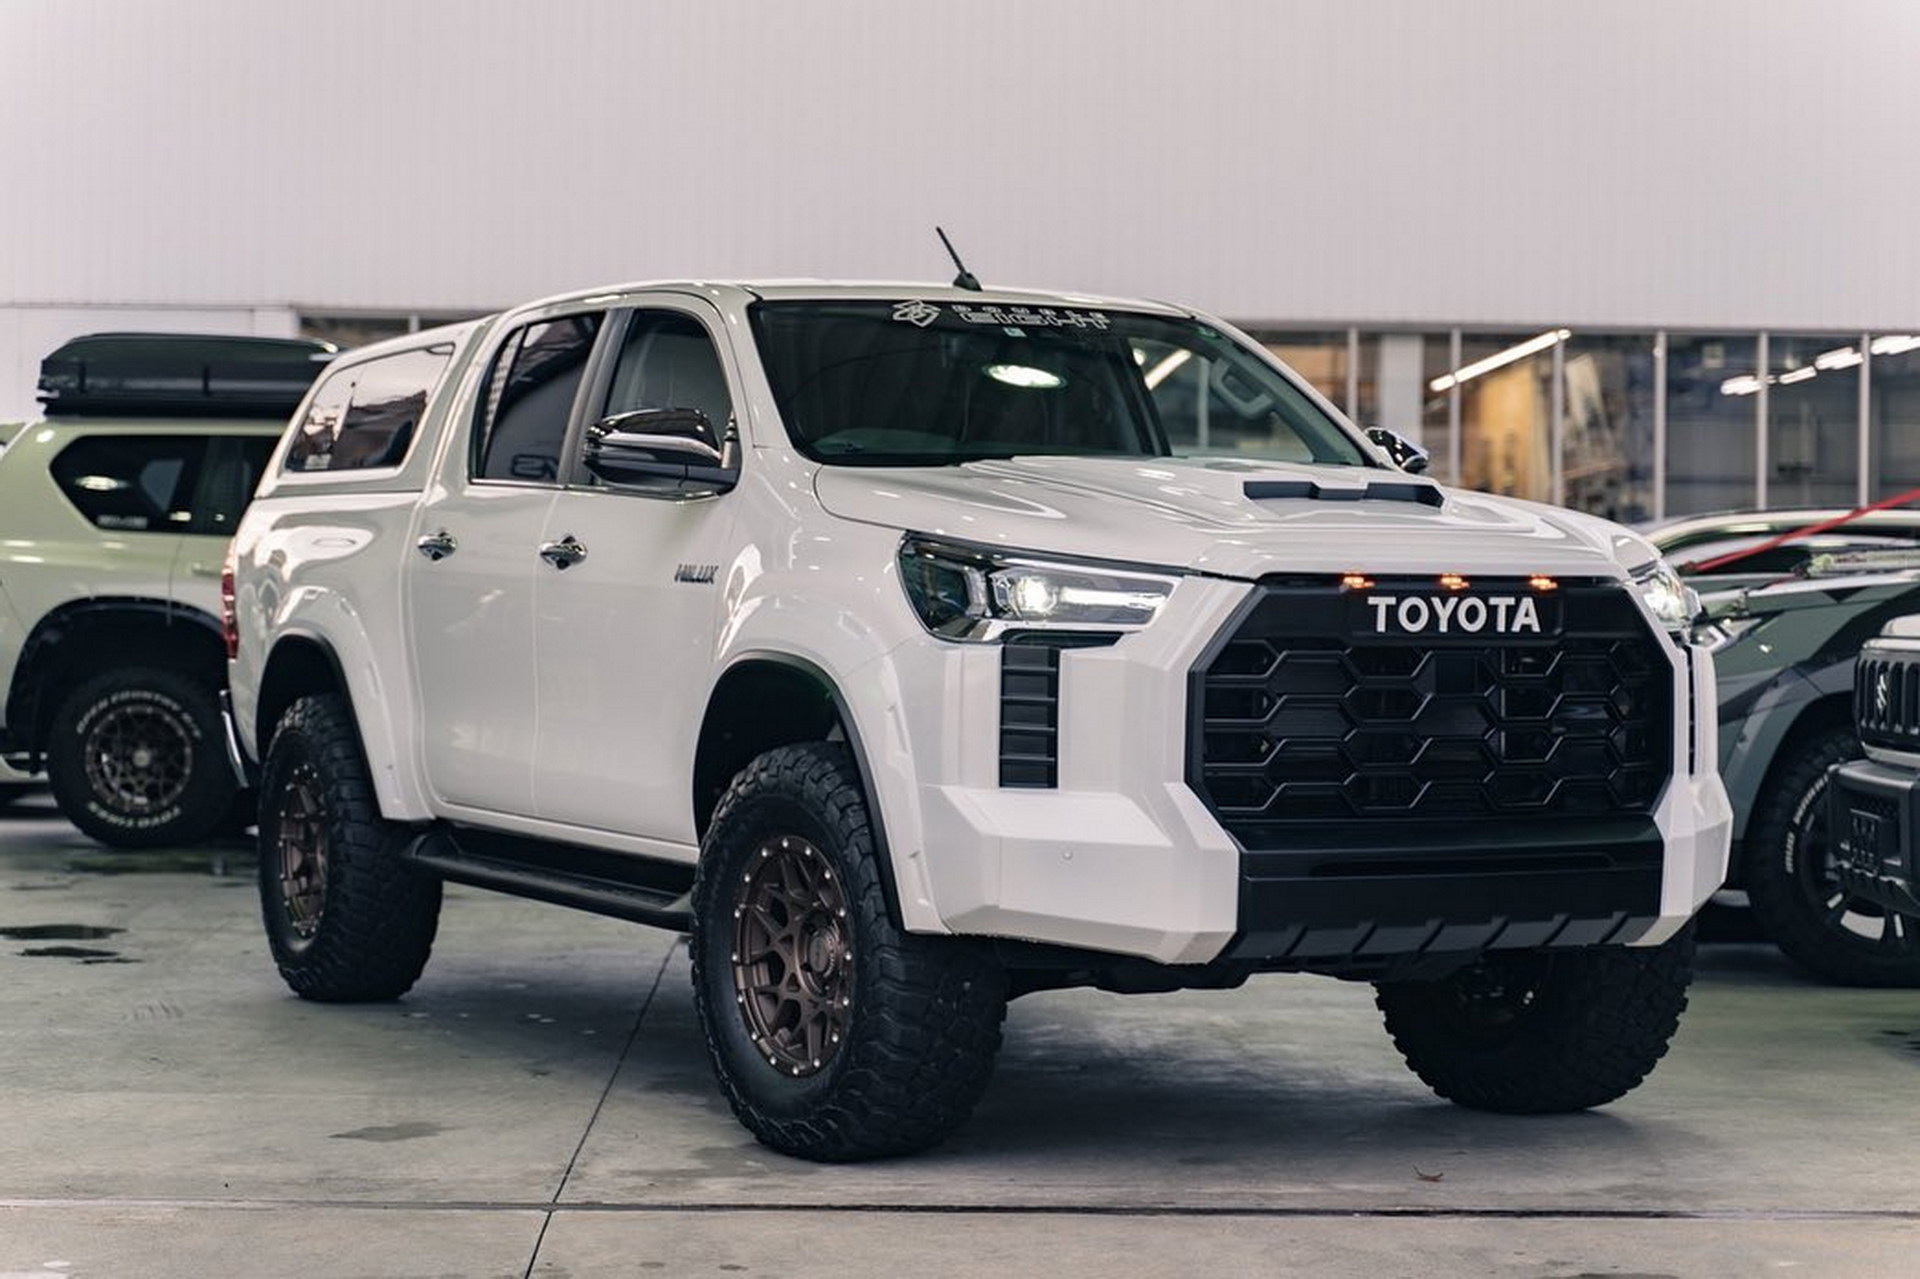 Toyota Hilux тюнеры превратили в аналог новой Tundra